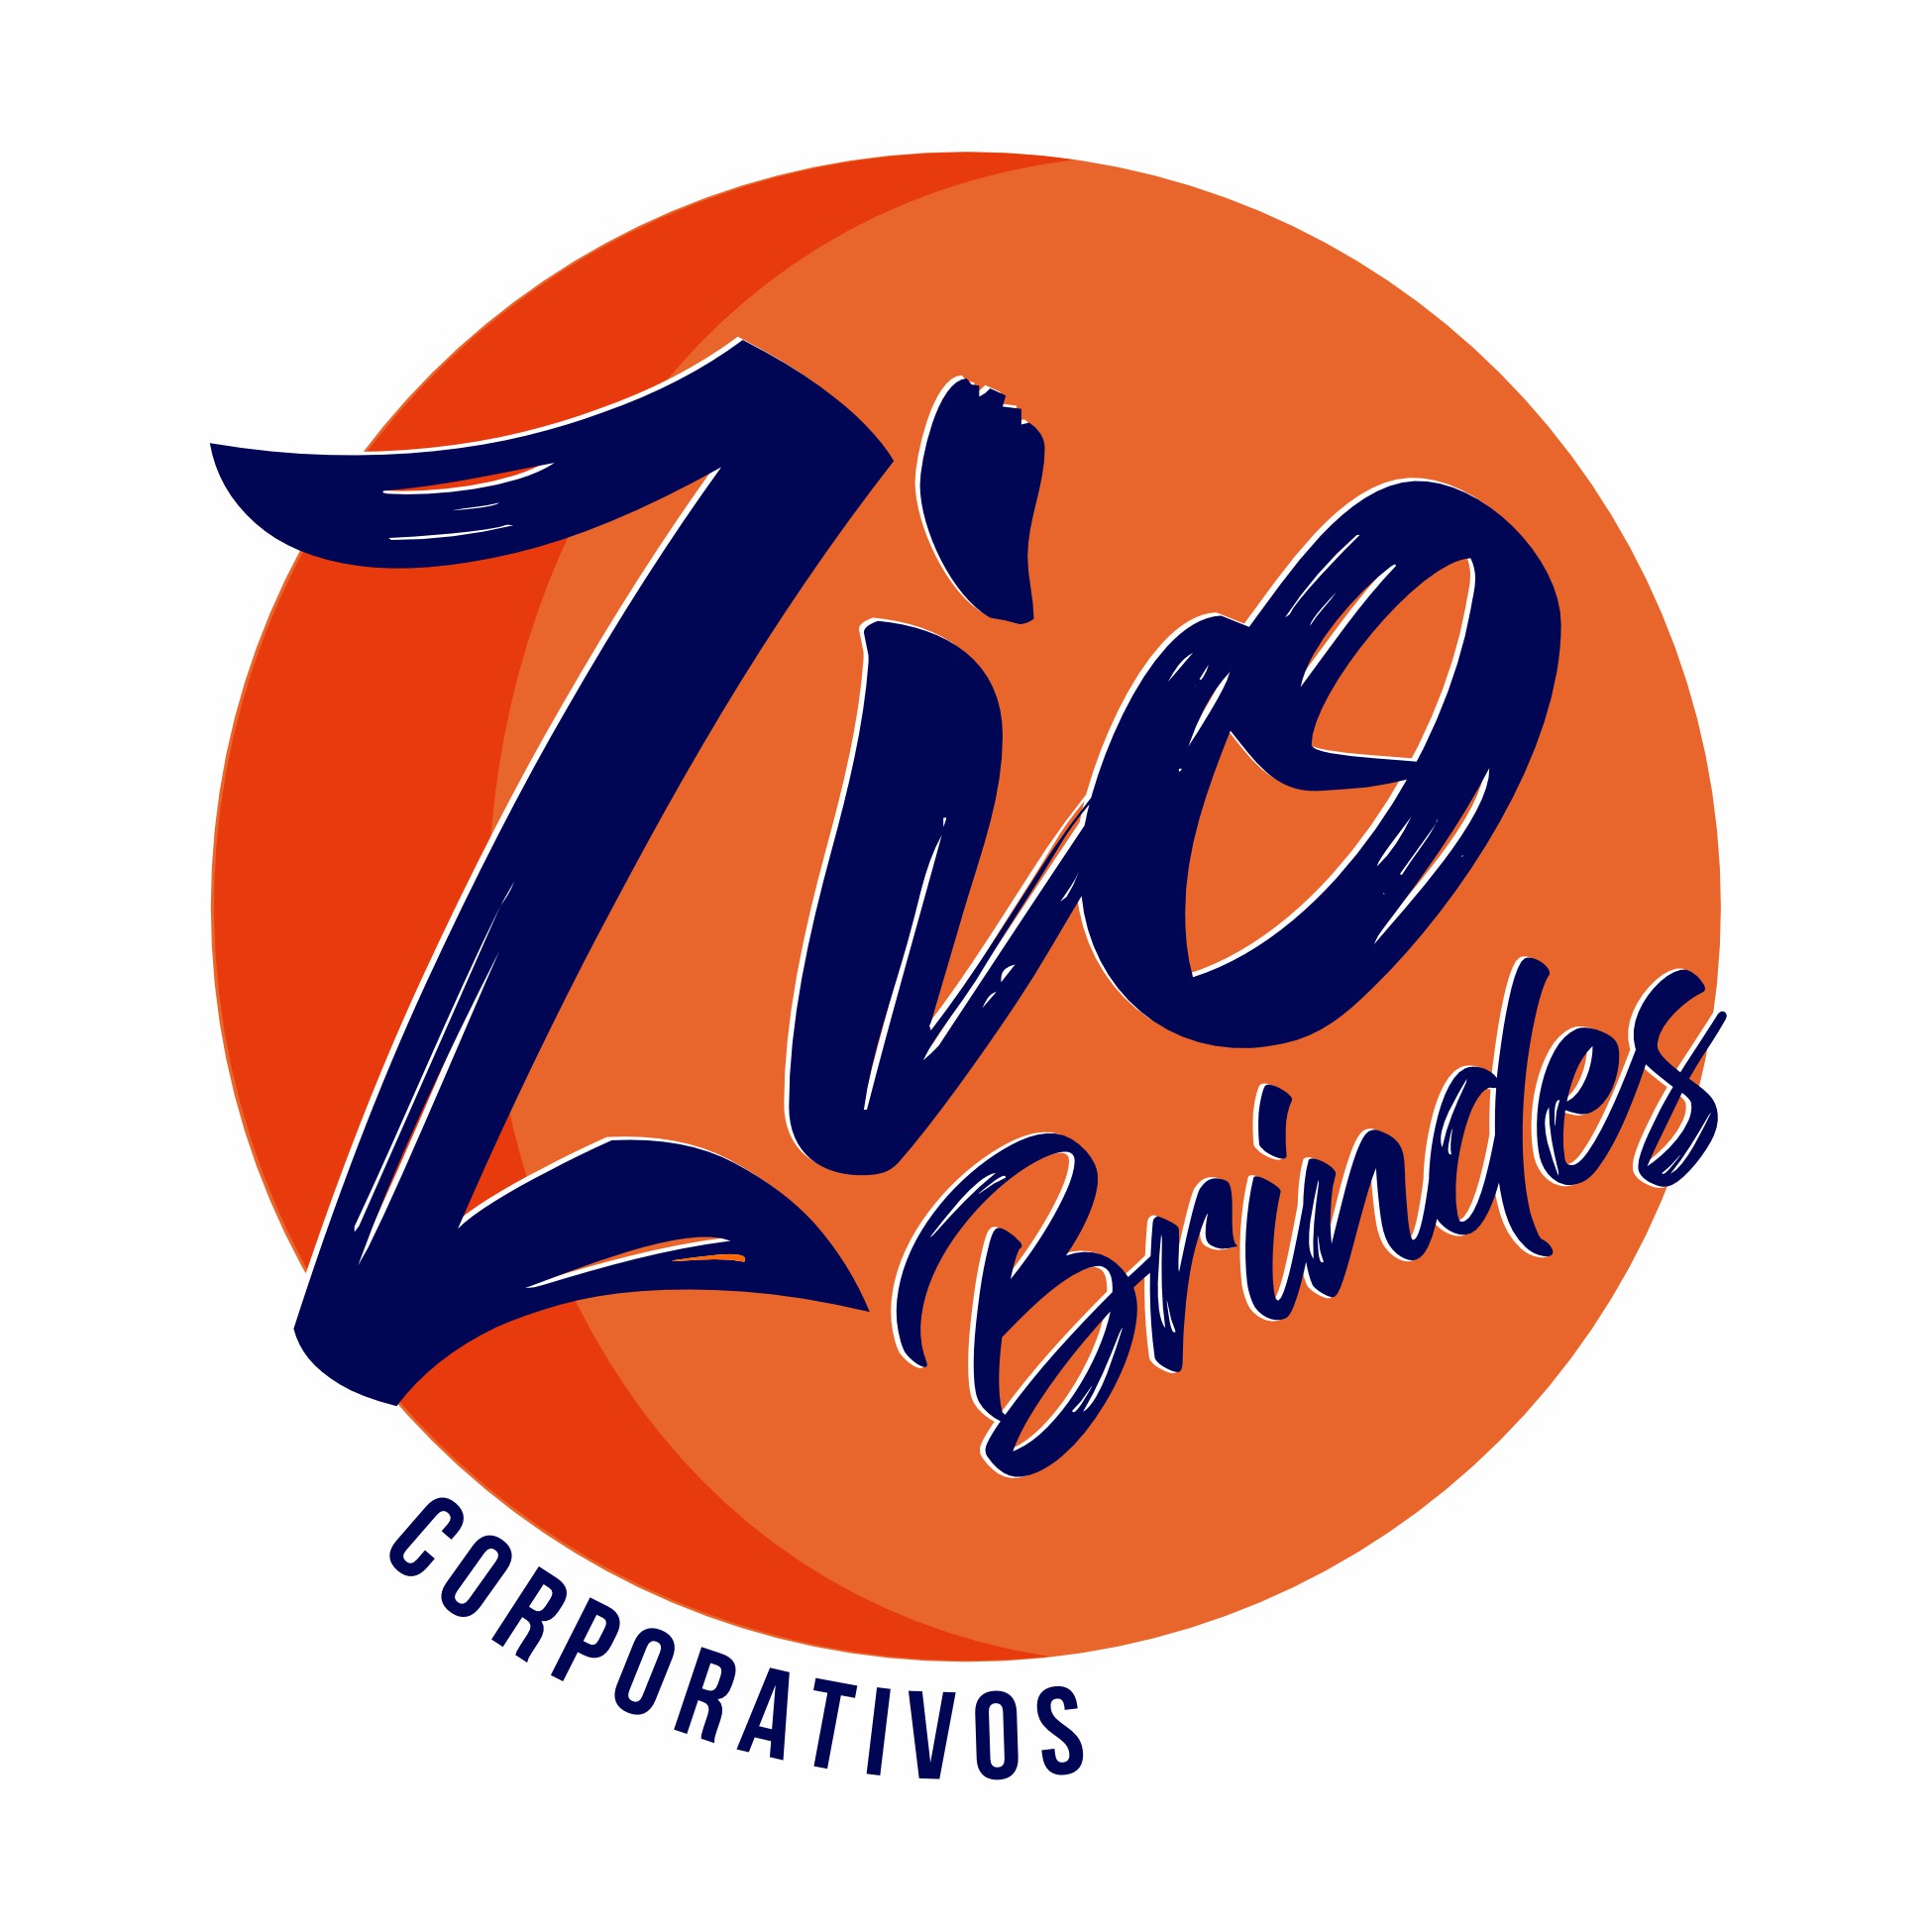 Zio Brindes Corporativos 